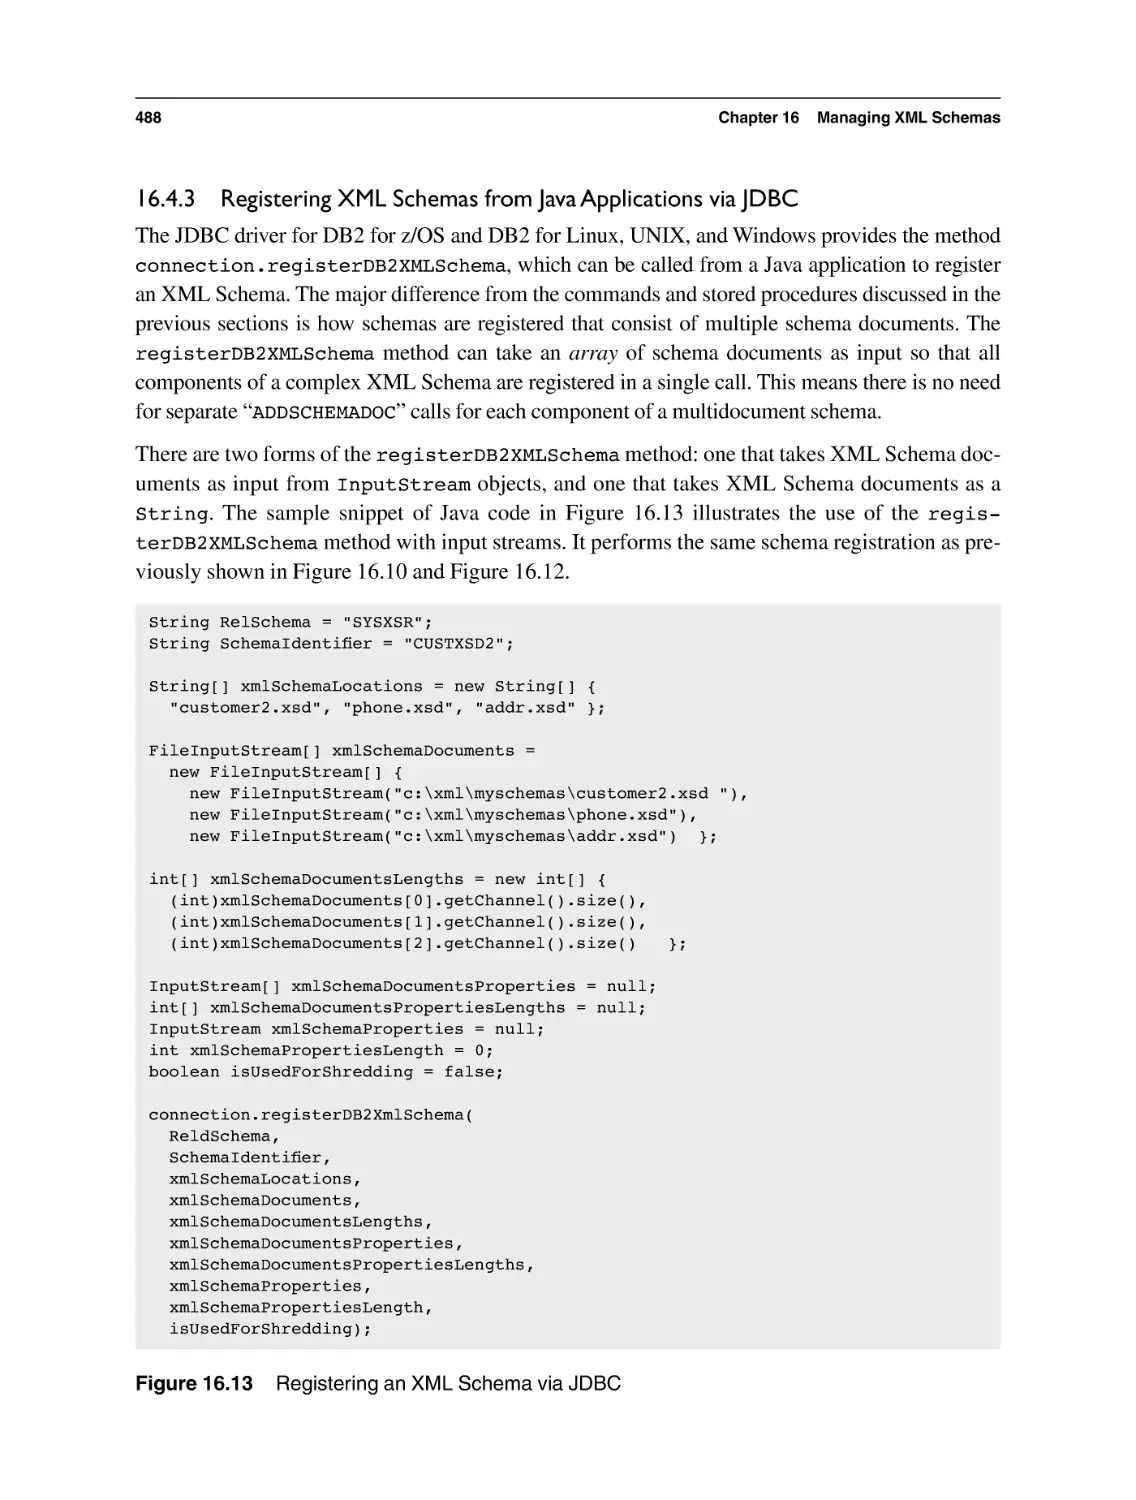 16.4.3 Registering XML Schemas from Java Applications via JDBC